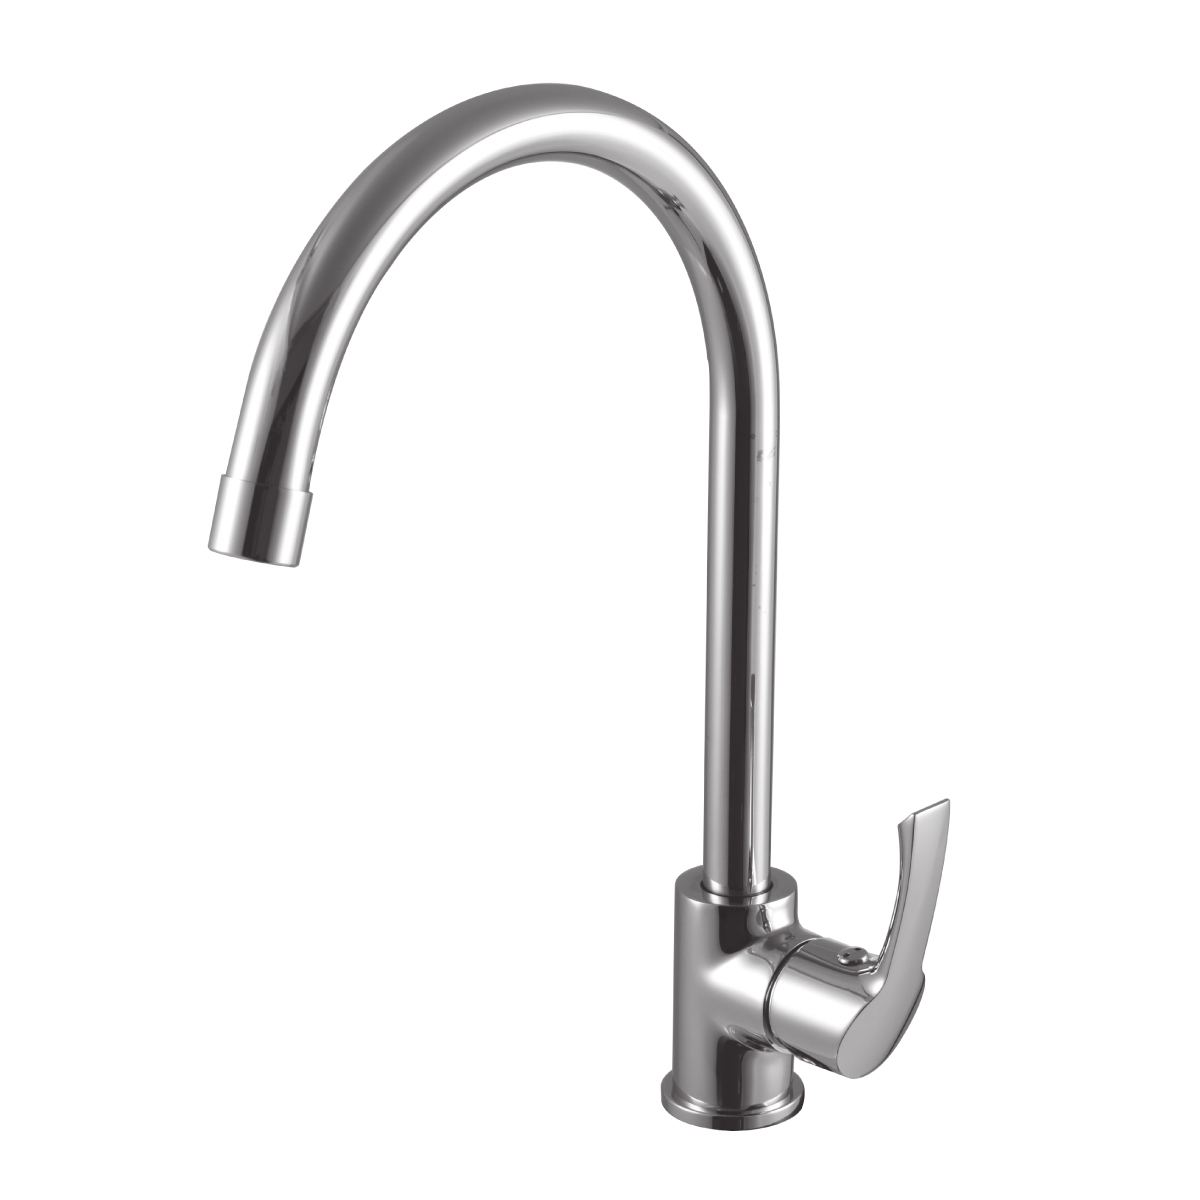 LM1105C Kitchen faucet
with swivel spout